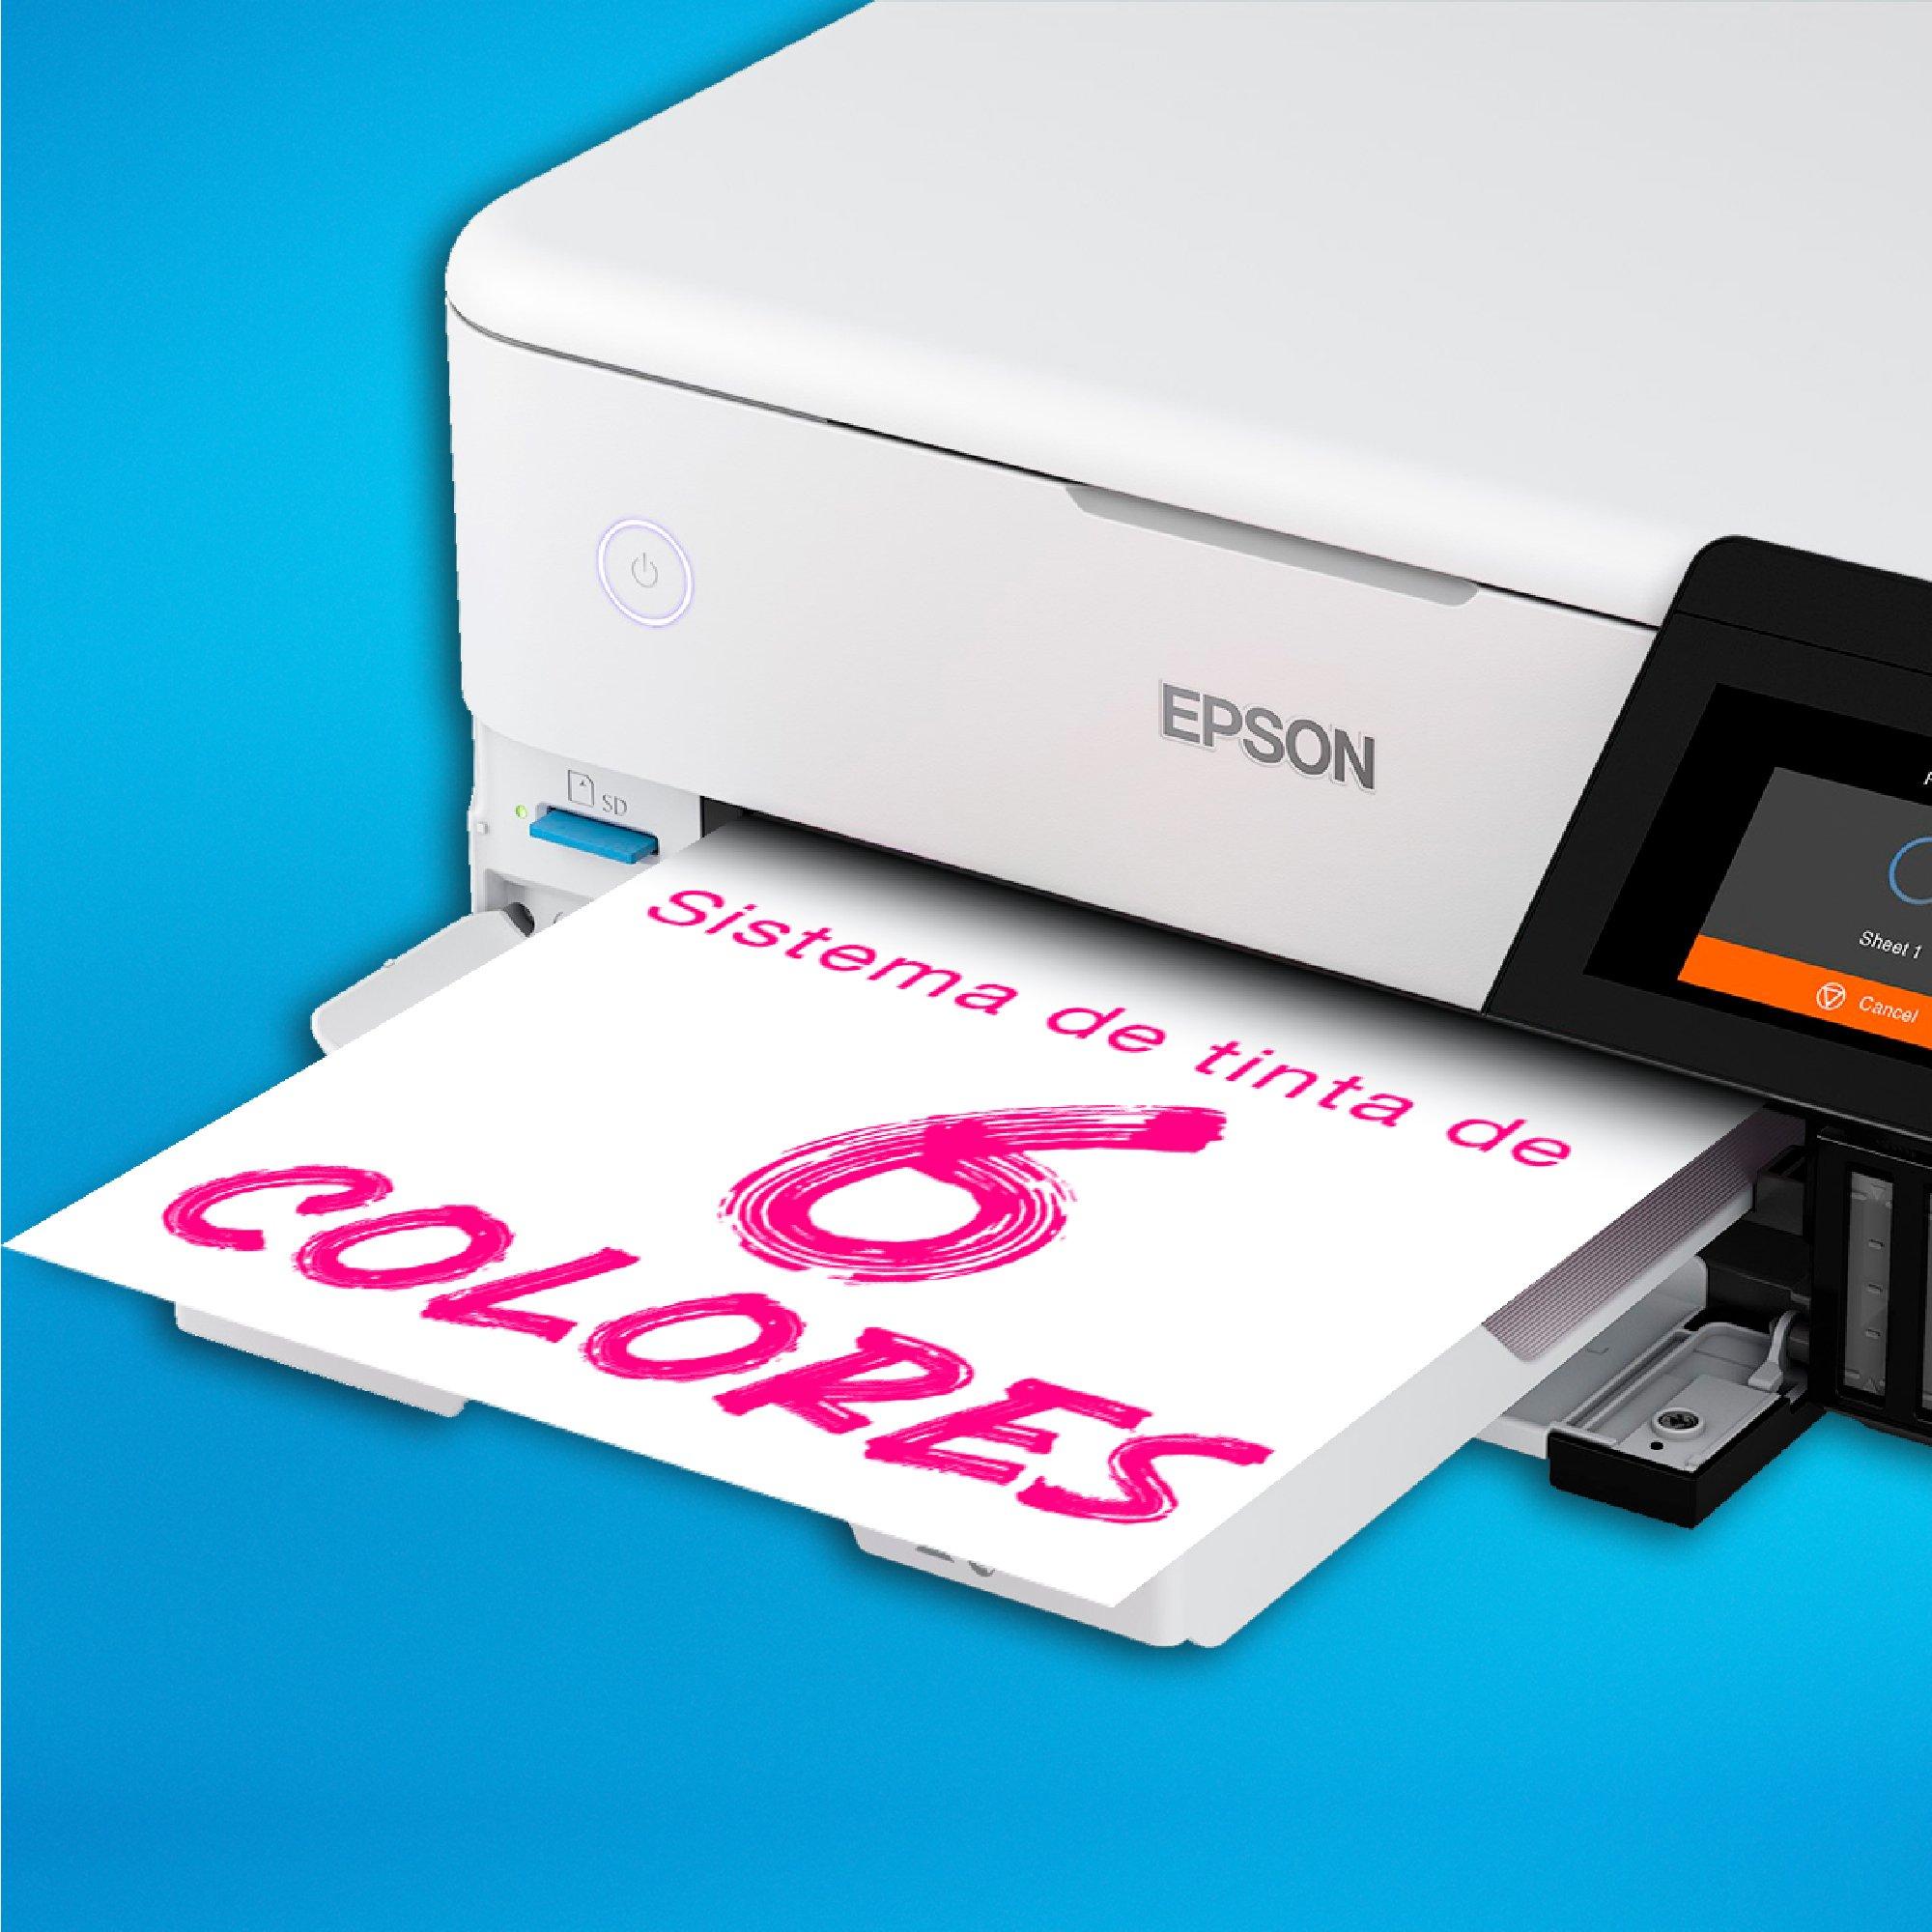  Epson EcoTank Photo ET-8500 Impresora inalámbrica a color todo  en uno Supertank con escáner, copiadora, Ethernet y pantalla táctil a color  de 4.3 pulgadas, blanco, grande : Productos de Oficina